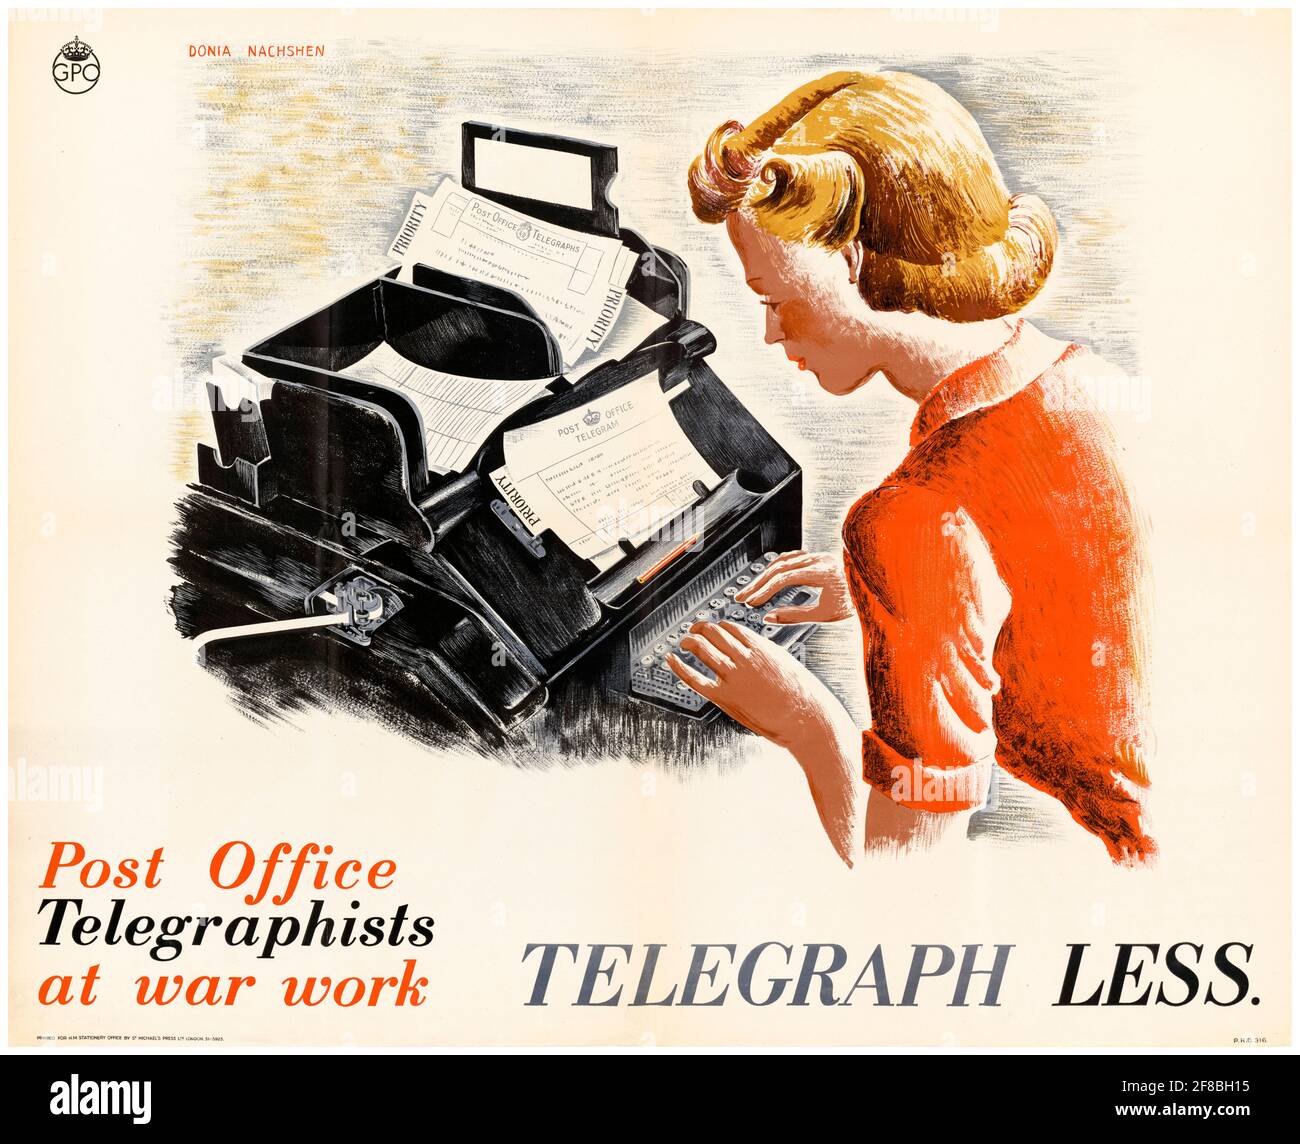 Ufficio postale Telegraphists at War Work: Telegraph Less, manifesto della guerra britannica della seconda guerra mondiale, 1942-1945 Foto Stock